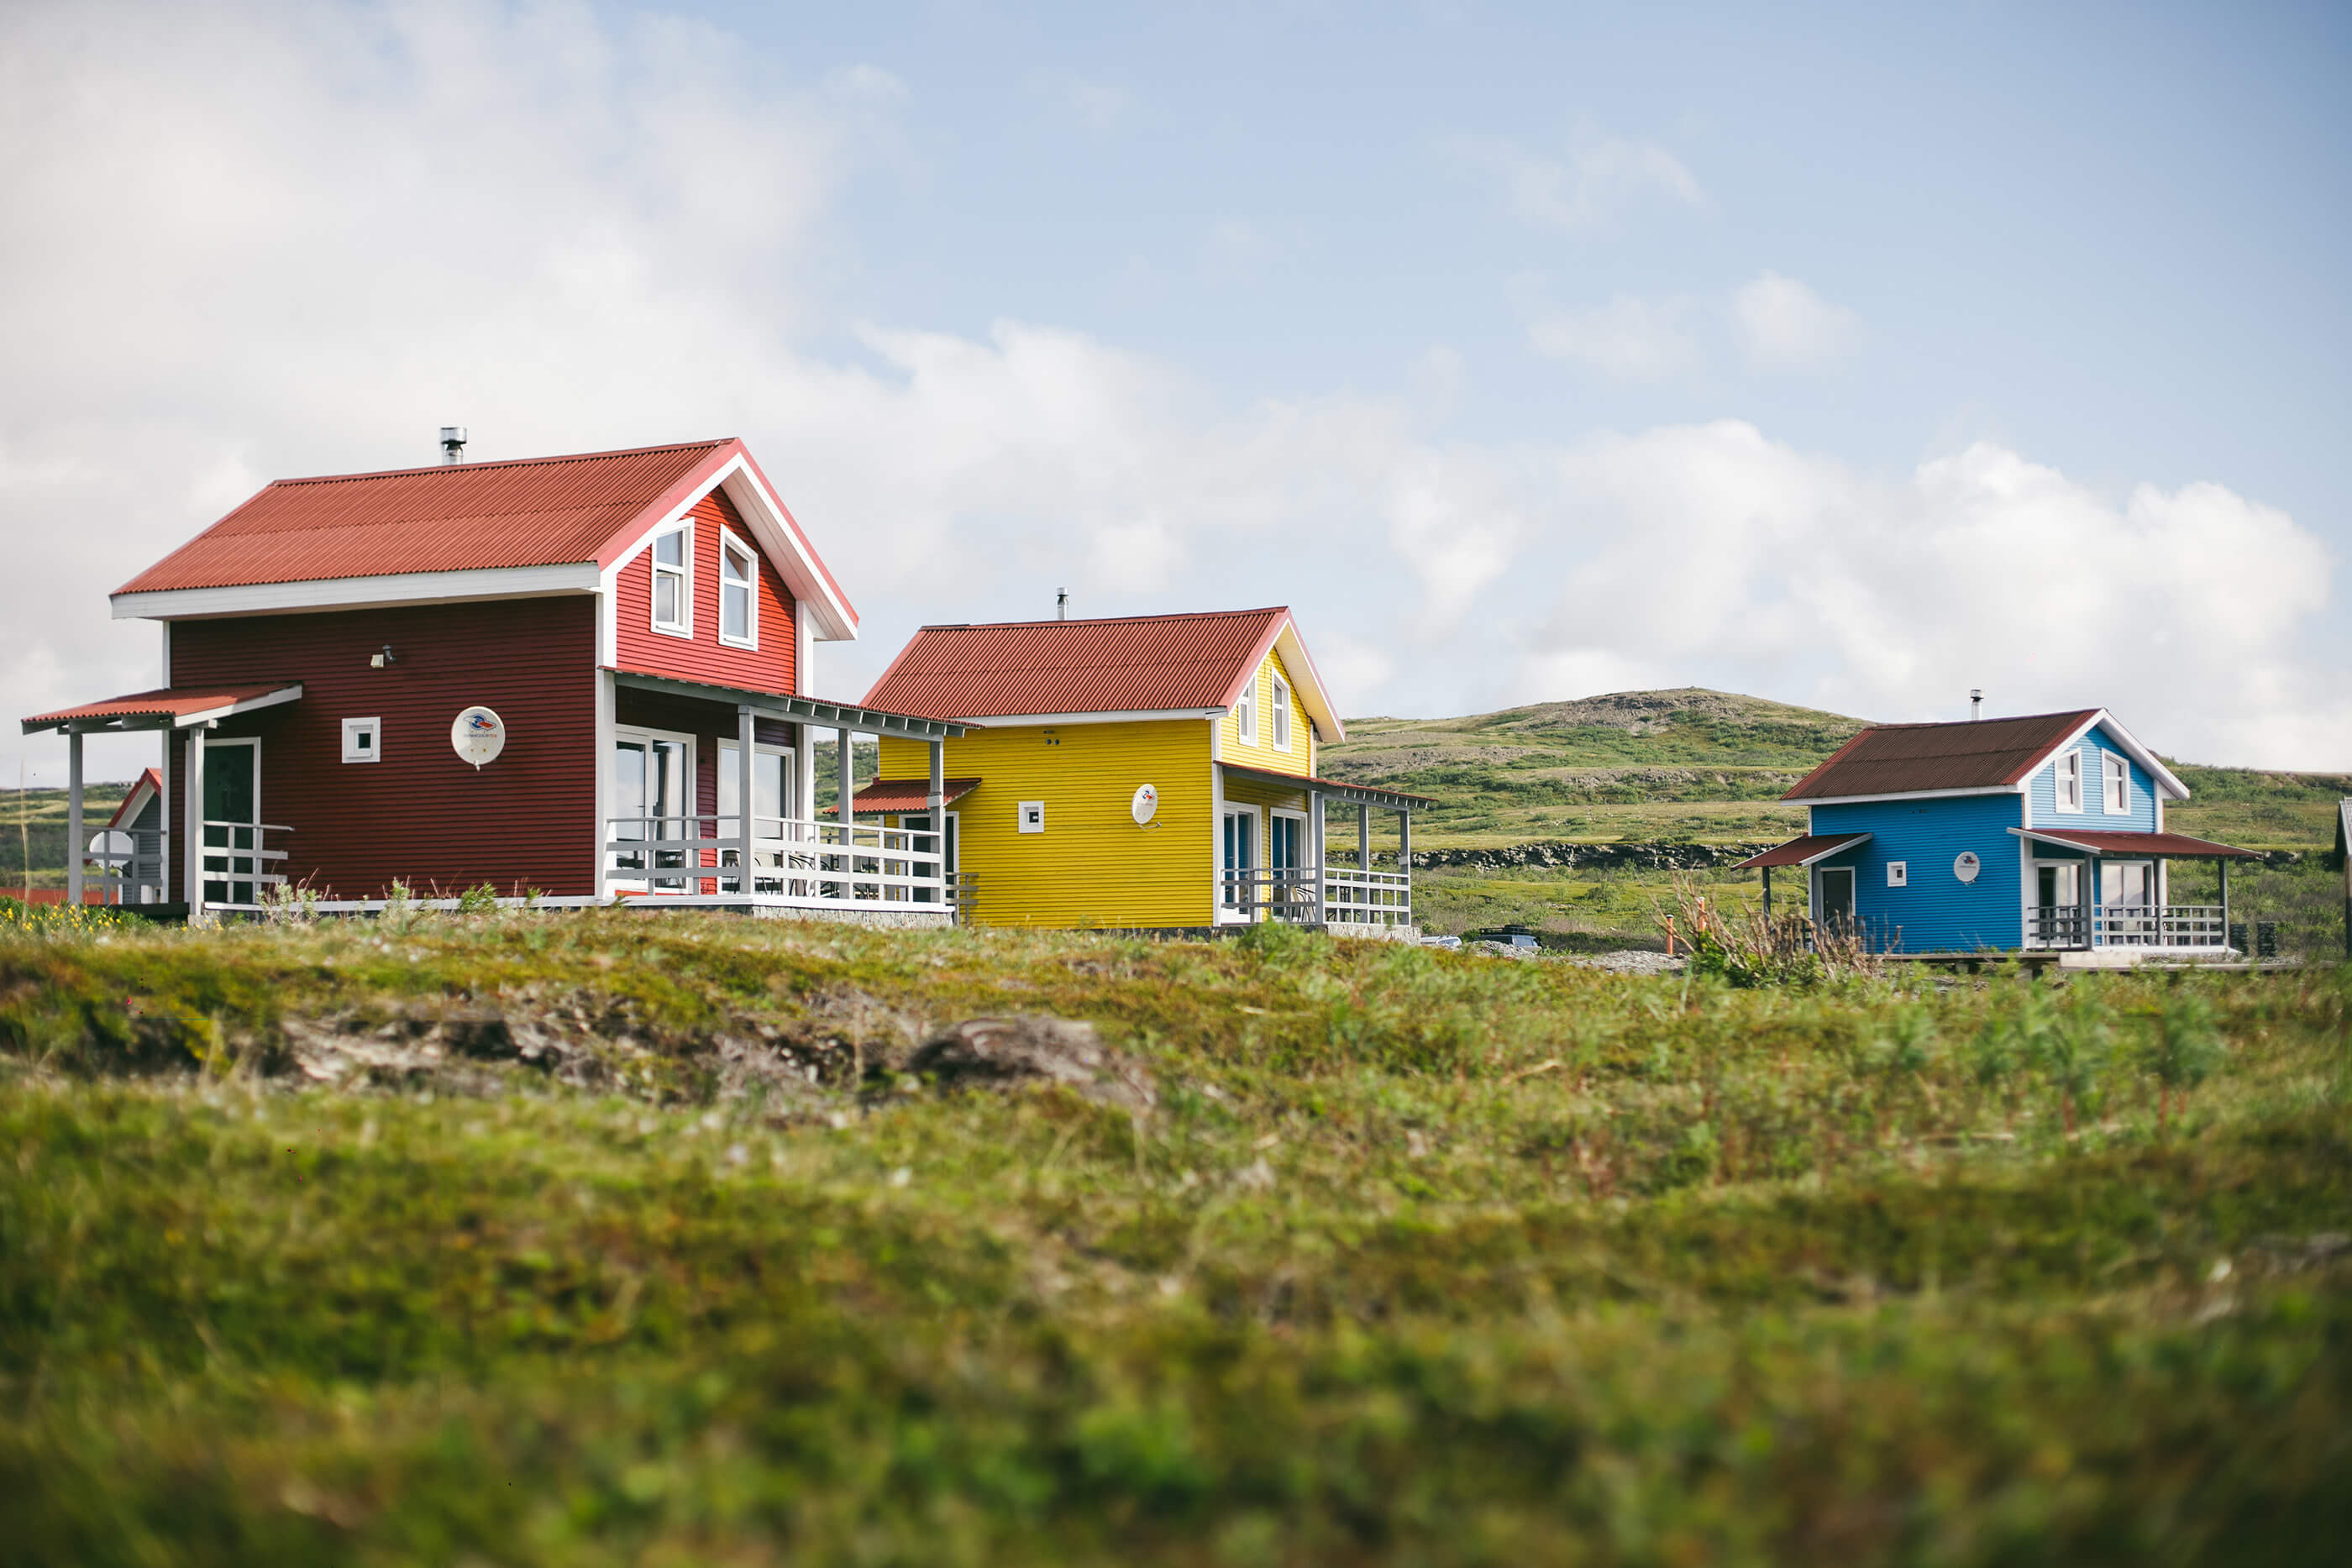 Домики раскрашены в яркие северные цвета.